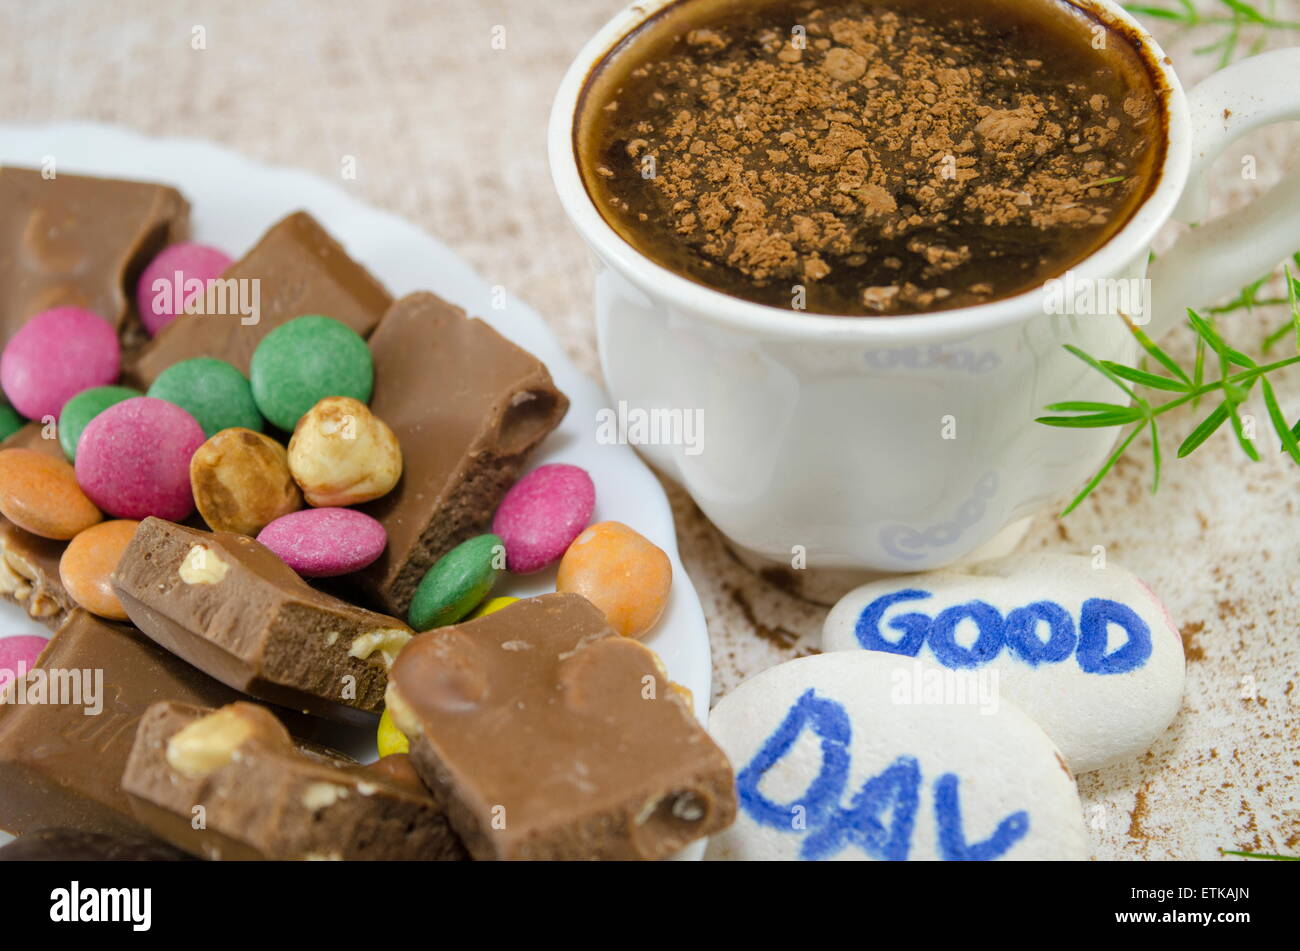 Café Chocolate con bombones y un "buen día" mensaje escrito sobre piedritas Foto de stock